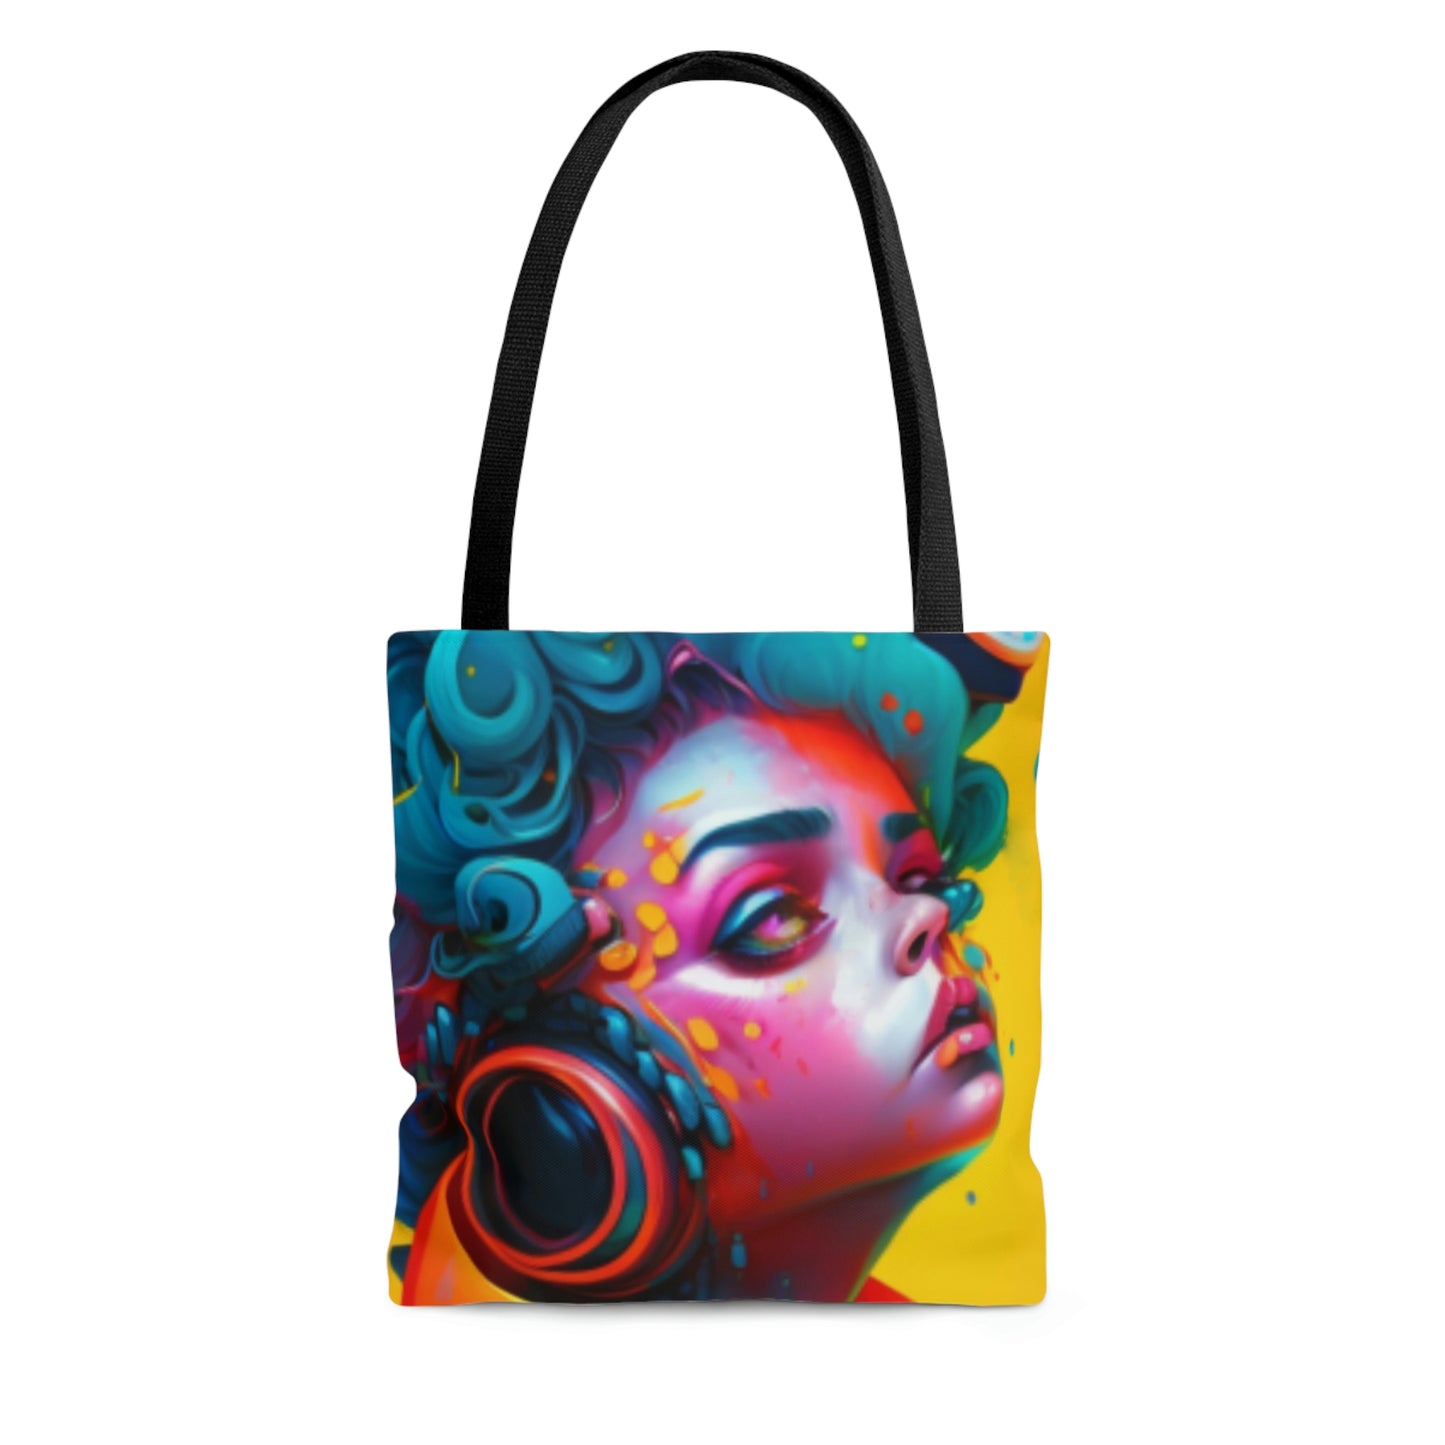 AOP Tote Bag- Painter Rocker Girl